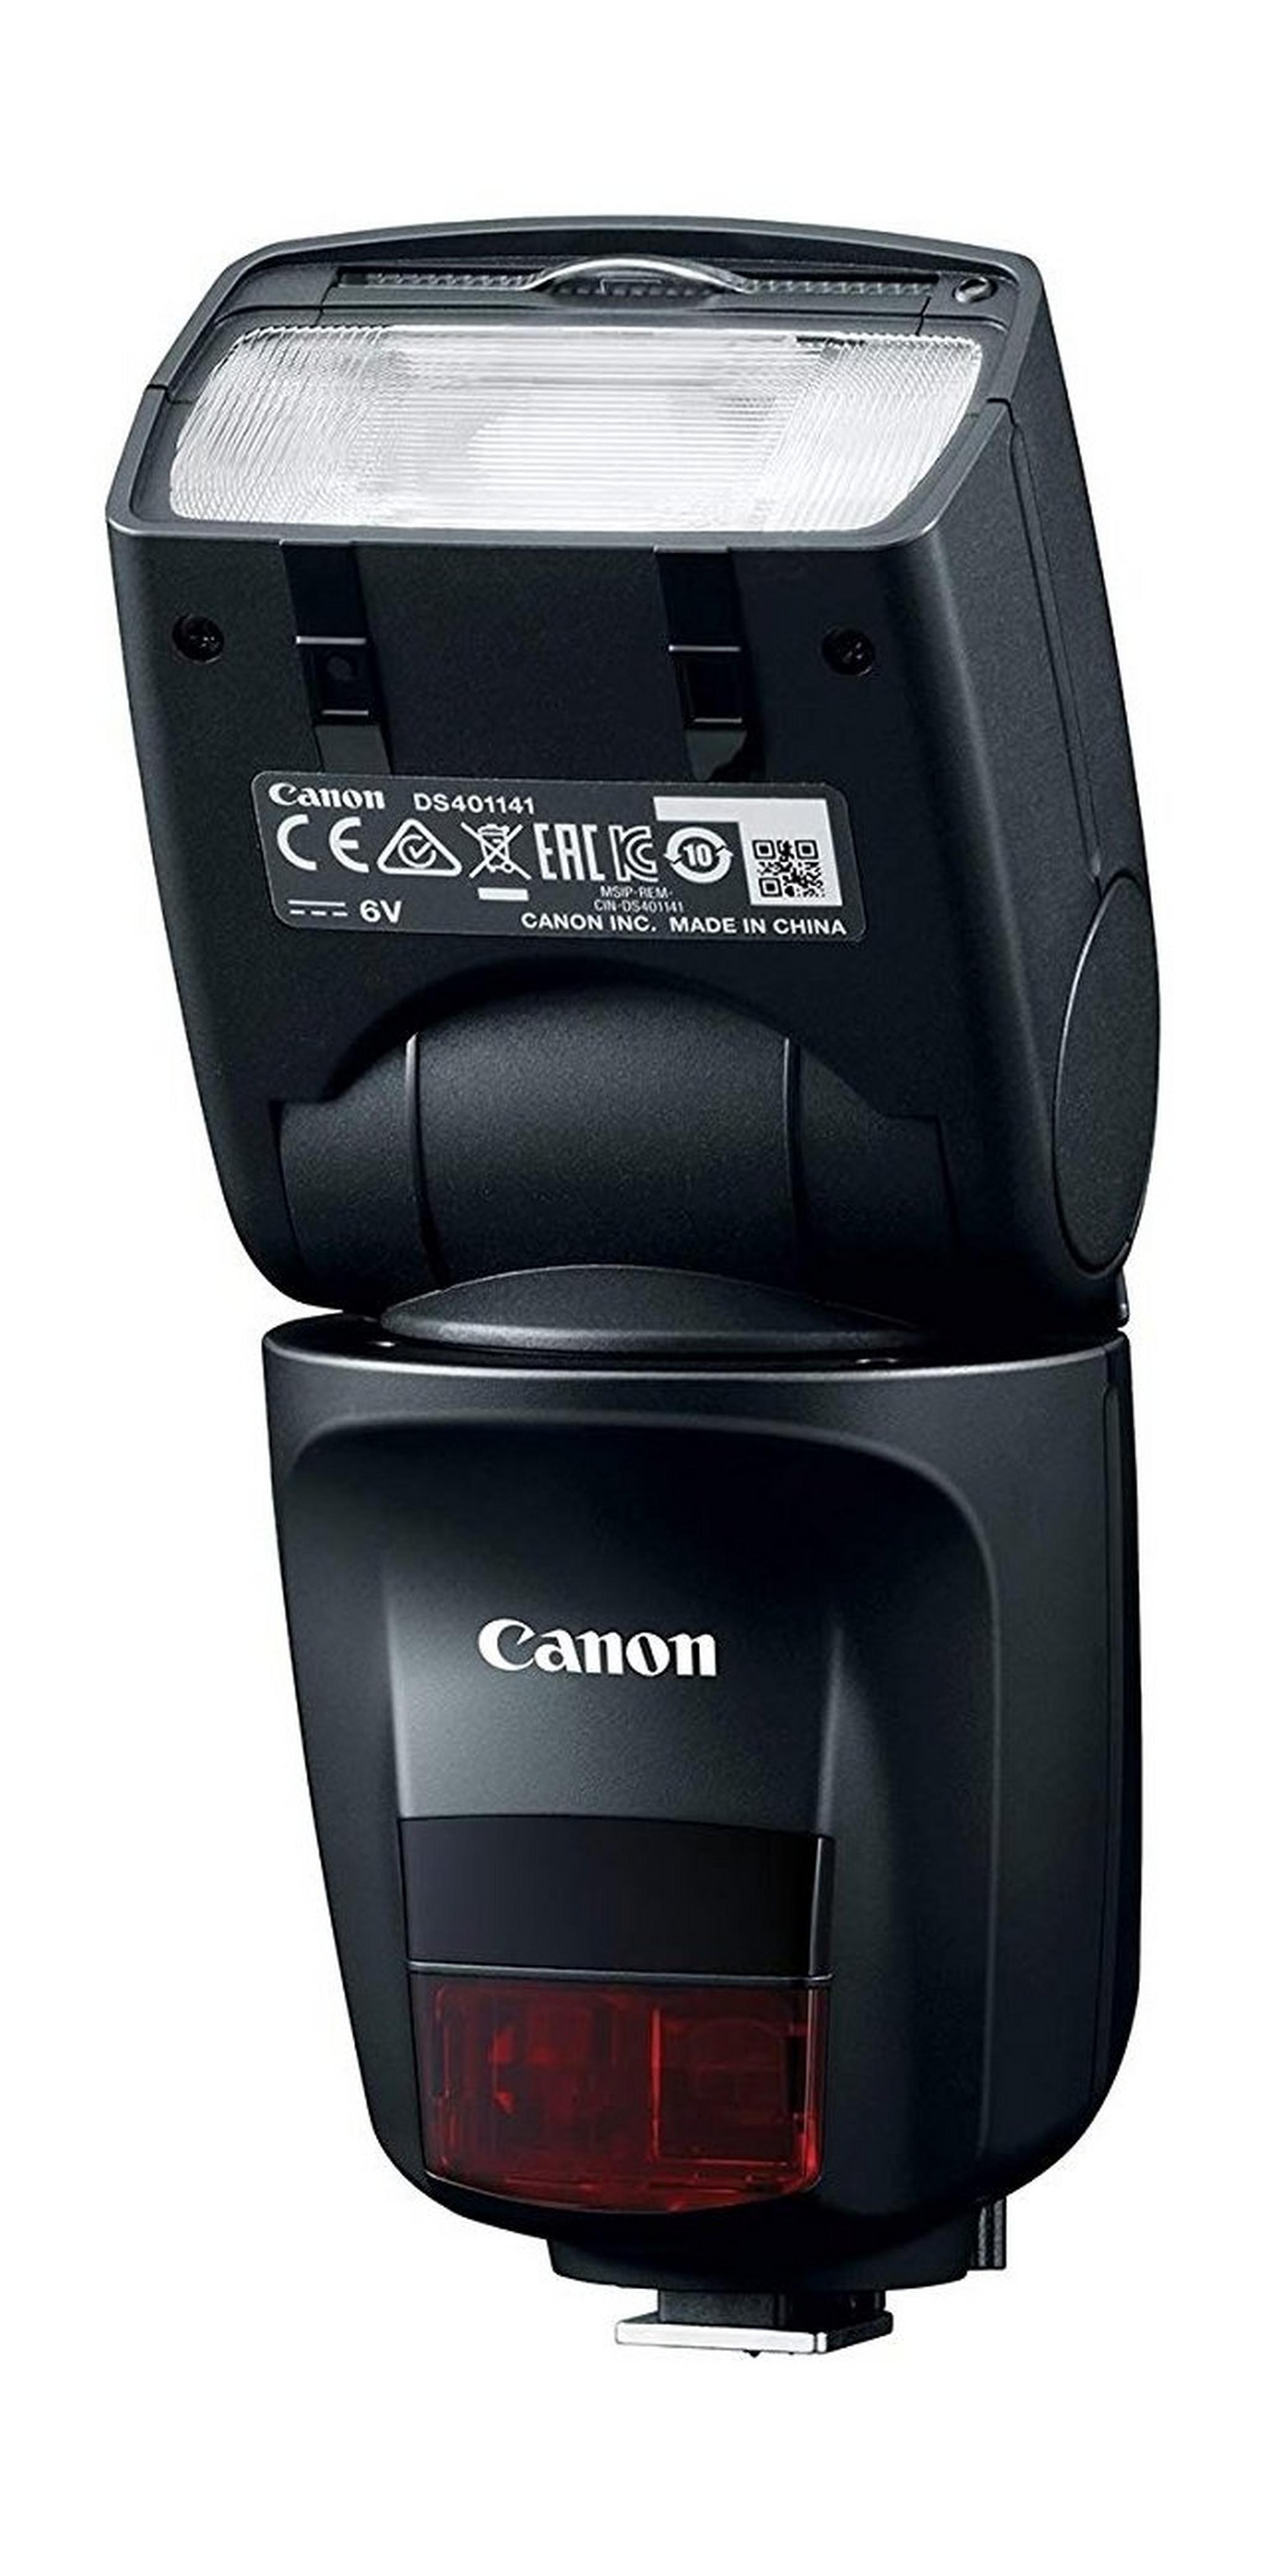 Canon Speedlite Flash (470EX-AI) - Black